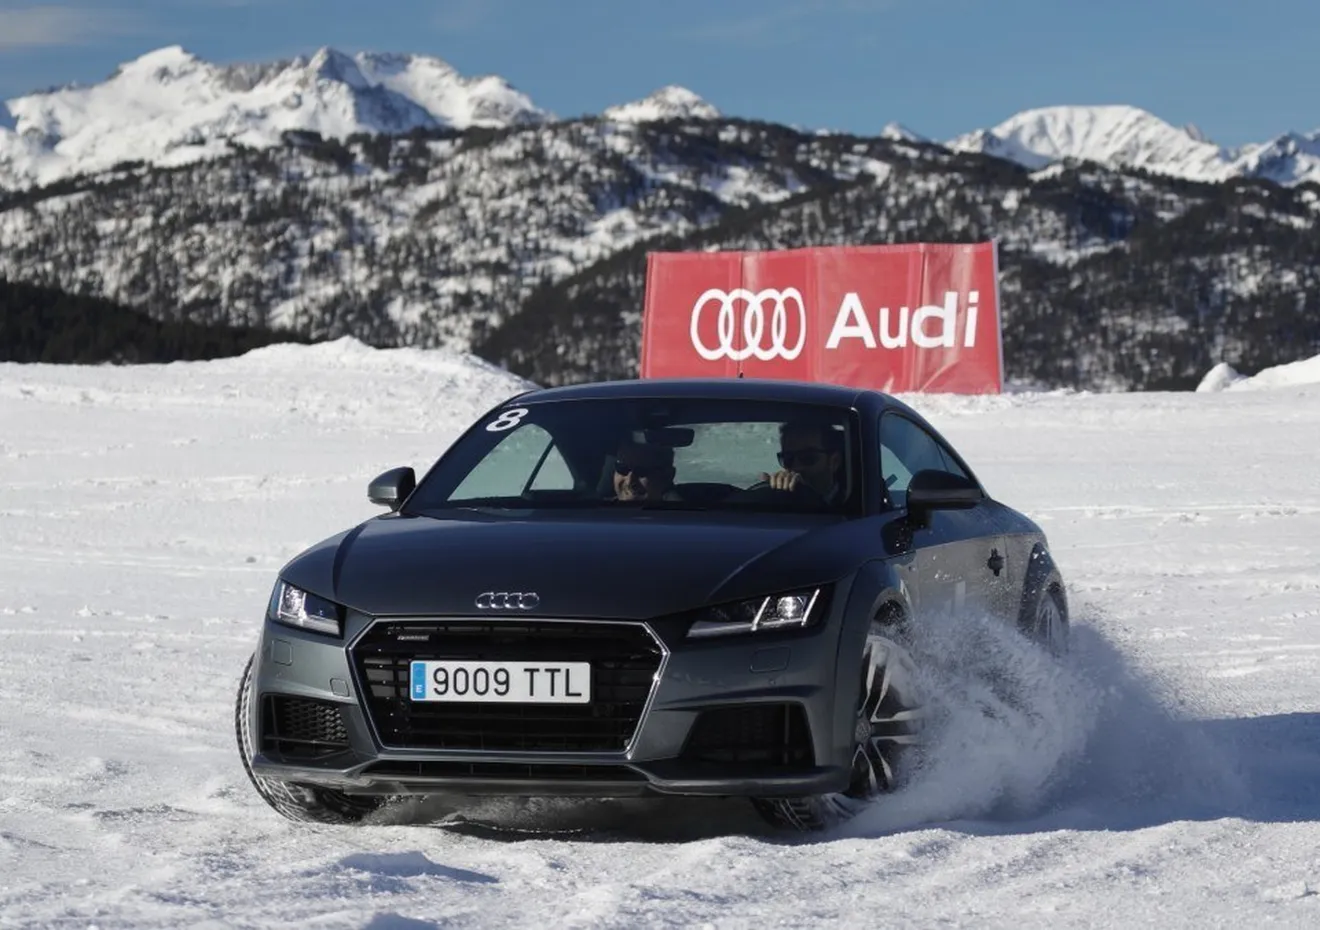 Audi Driving Experience anuncia sus nuevos cursos de conducción de invierno 